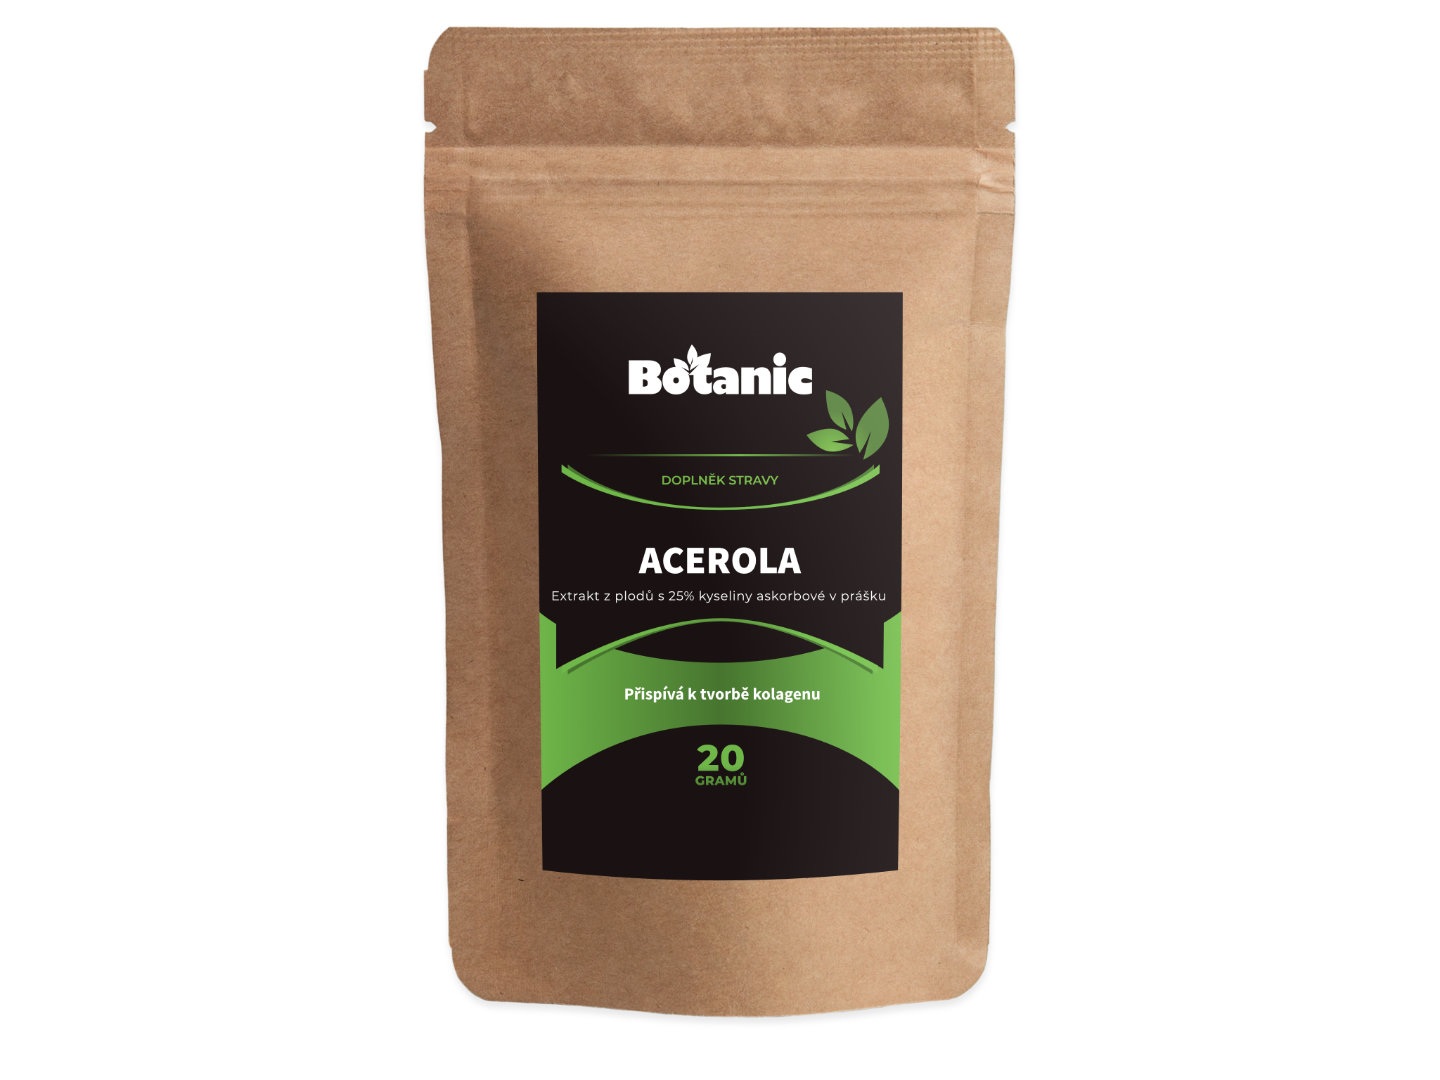 Botanic Acerola - Extrakt z plodů s 25% kyseliny askorbové v prášku 20g